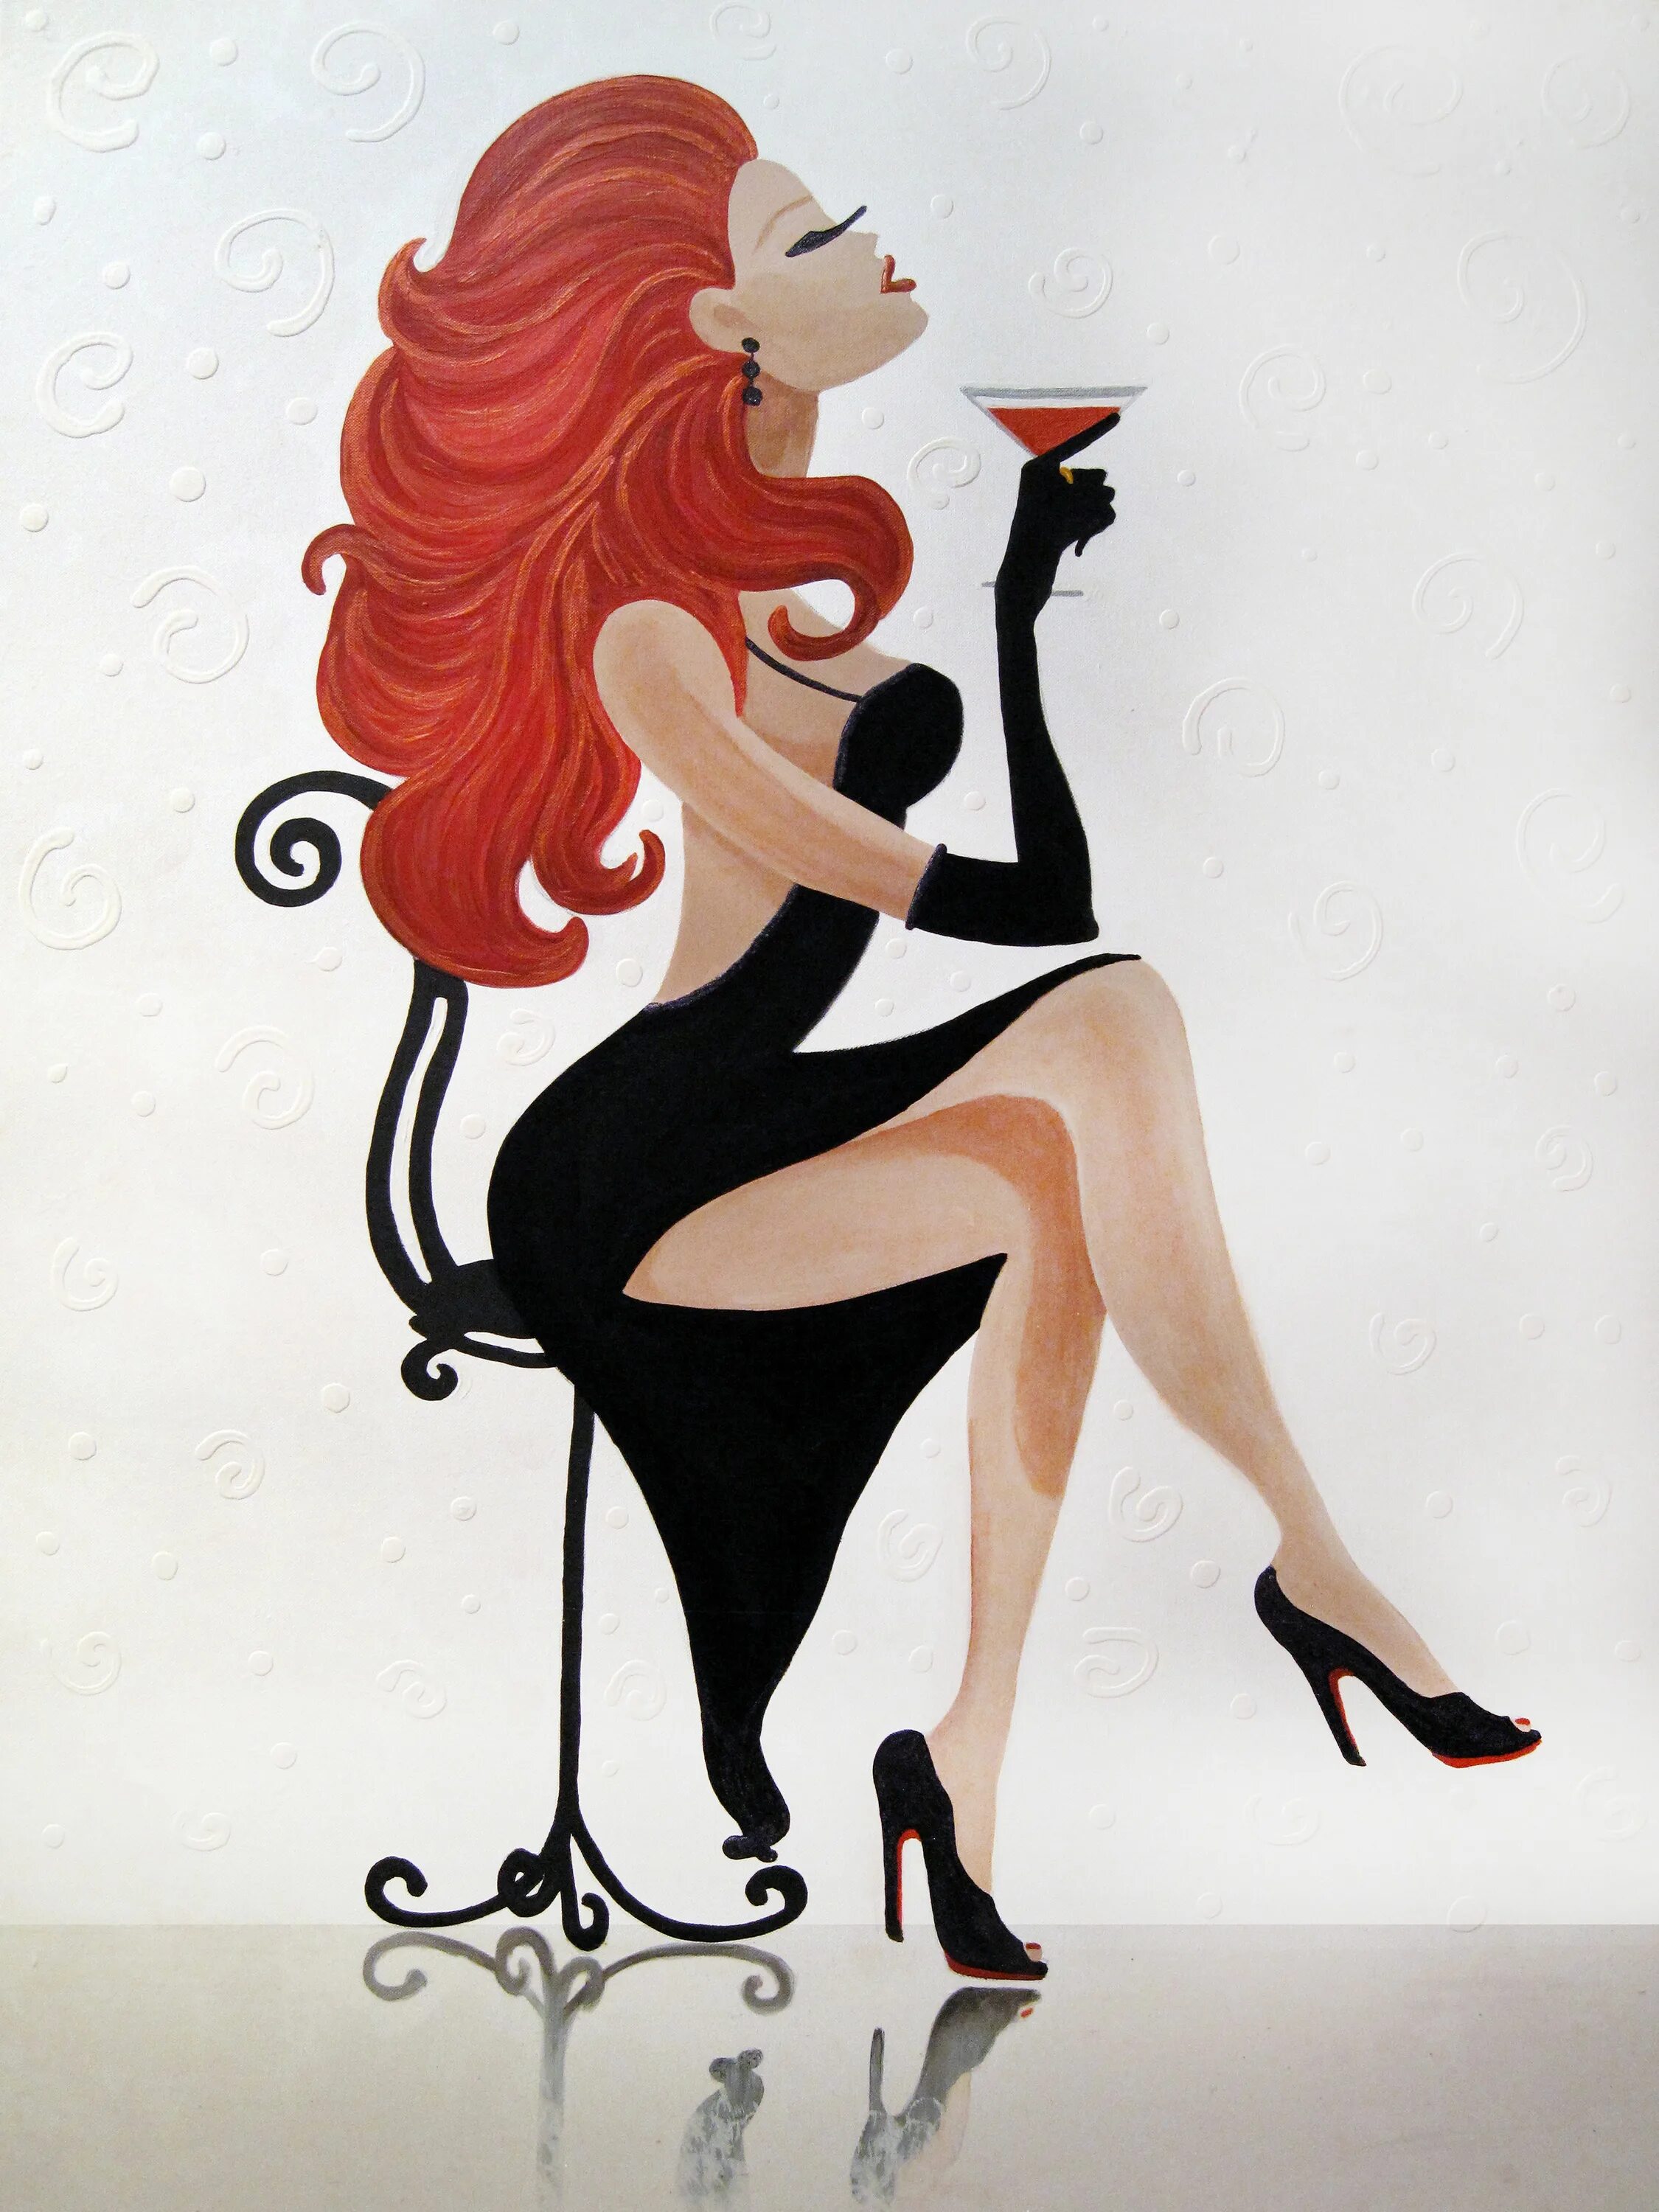 Женщина Скорпион. Рыжая девушка поп арт. Картинки на аватарку для женщин прикольные. Рисованные аватарки для женщин. Открытка на аватарку